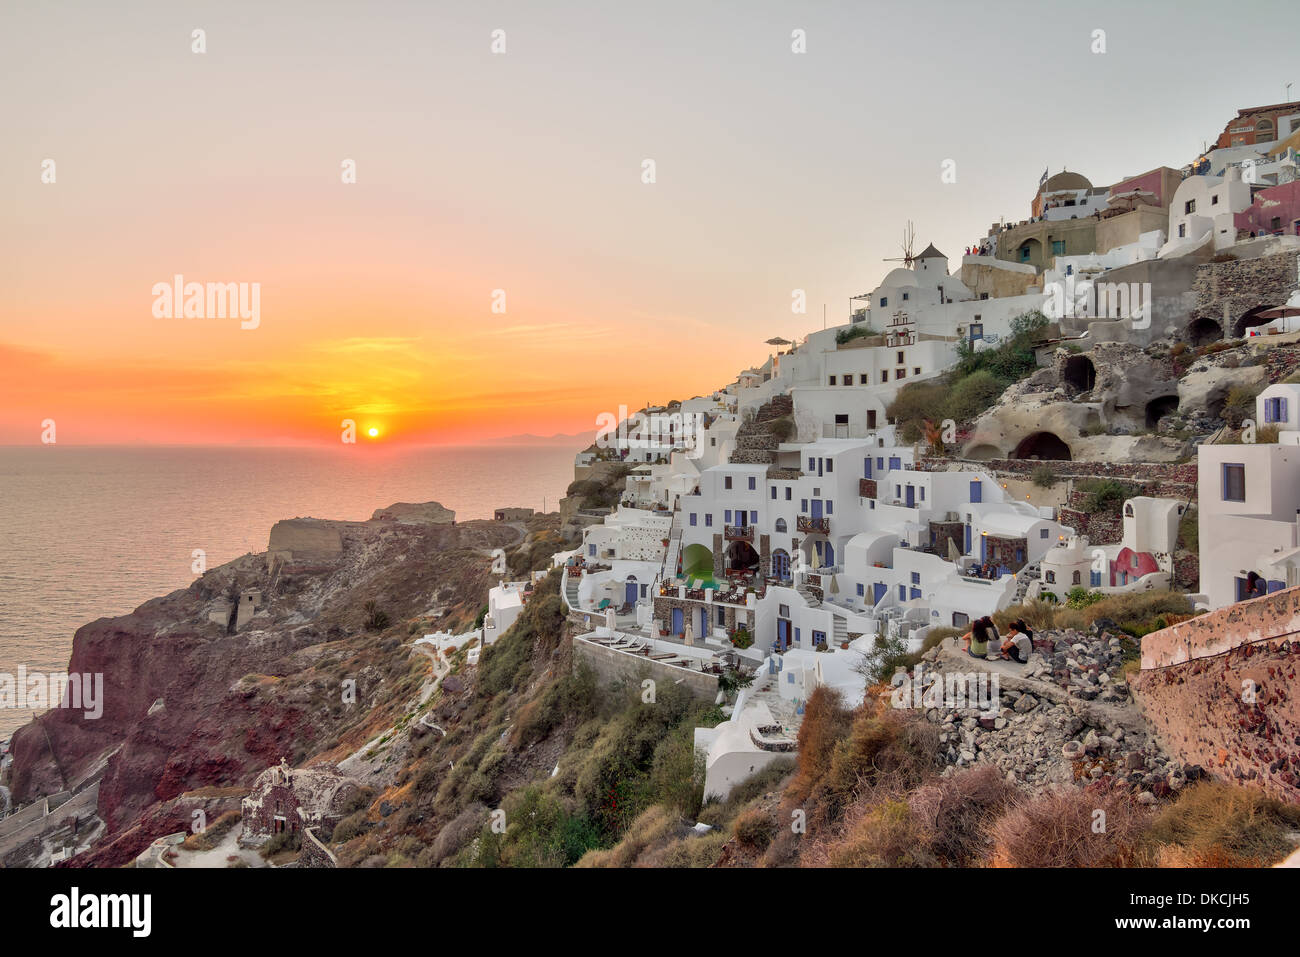 Beau village d'Oia coucher du soleil sur l'île de Santorin Grèce photographié d'un point de vue en mode HDR (high dynamic range) Banque D'Images